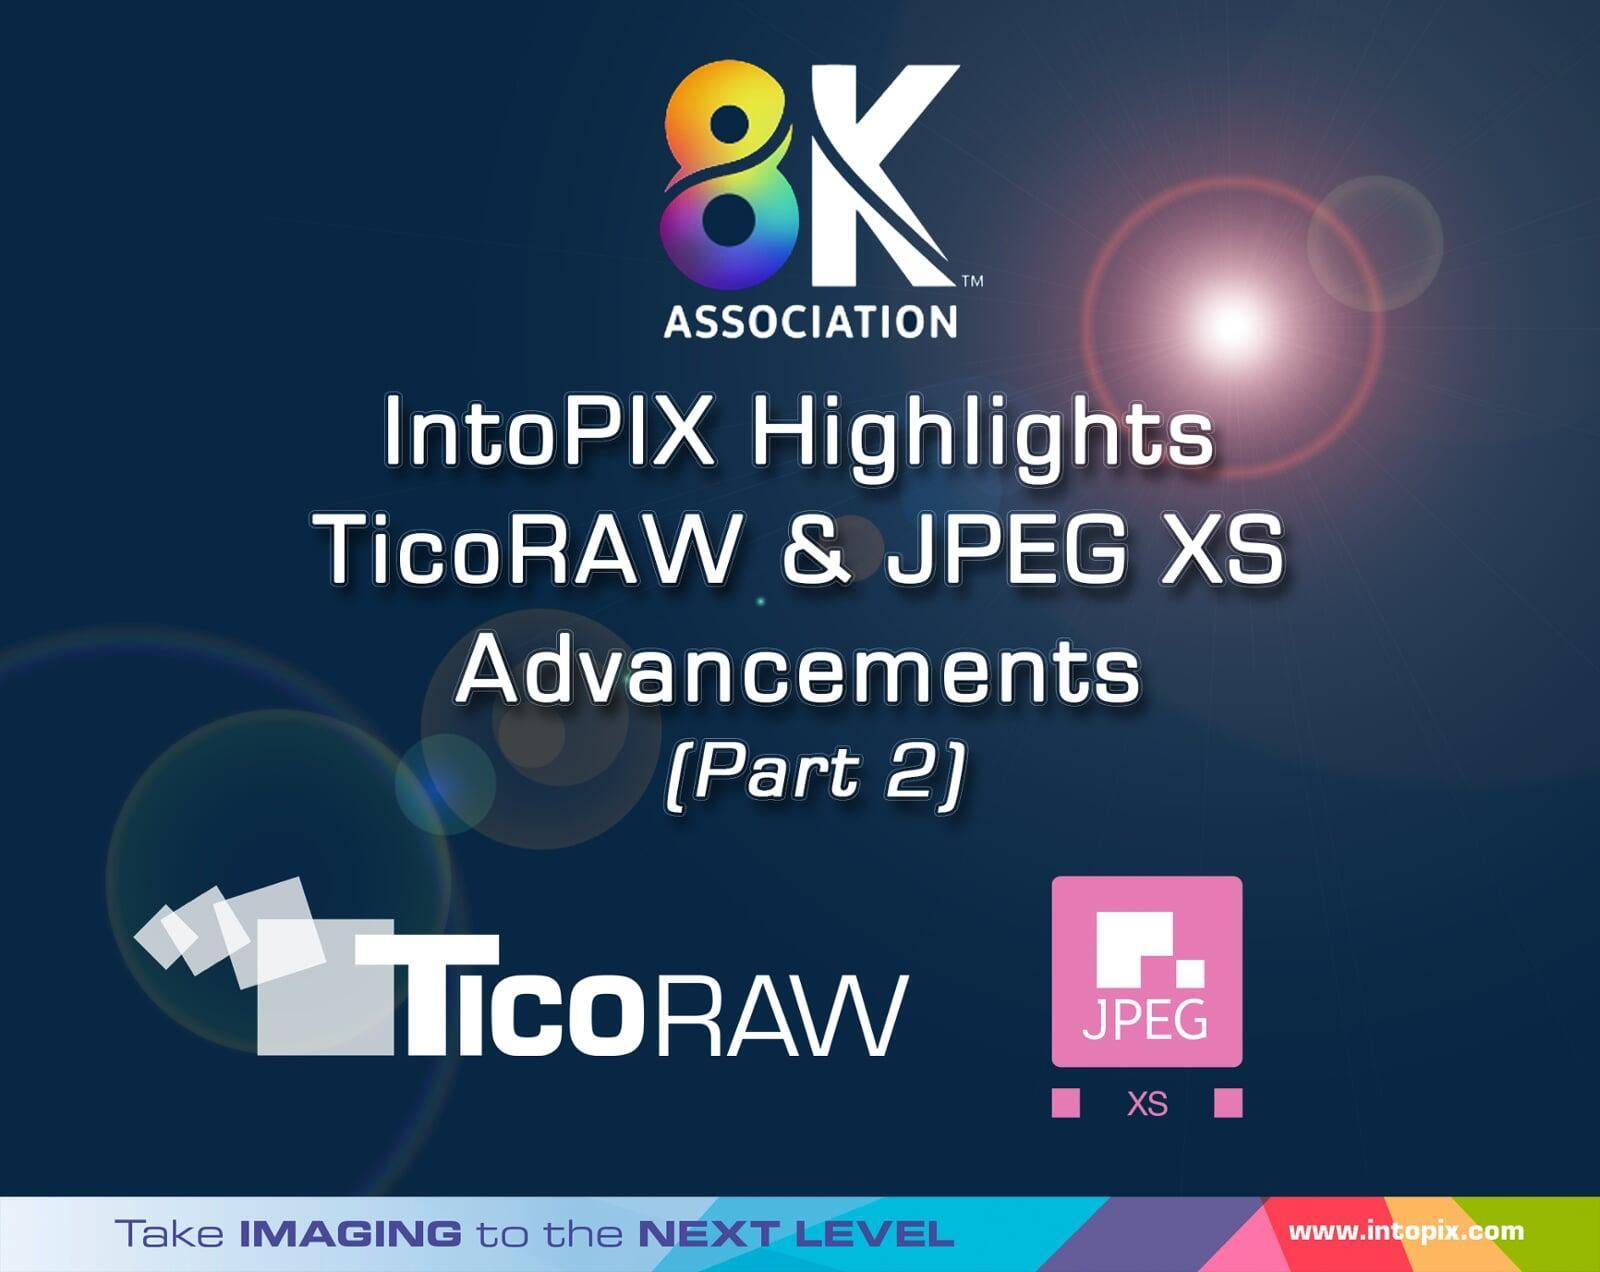 8K 협회: IntoPIX, TicoRAW 및 JPEG XS 개선 사항 강조 (2부)